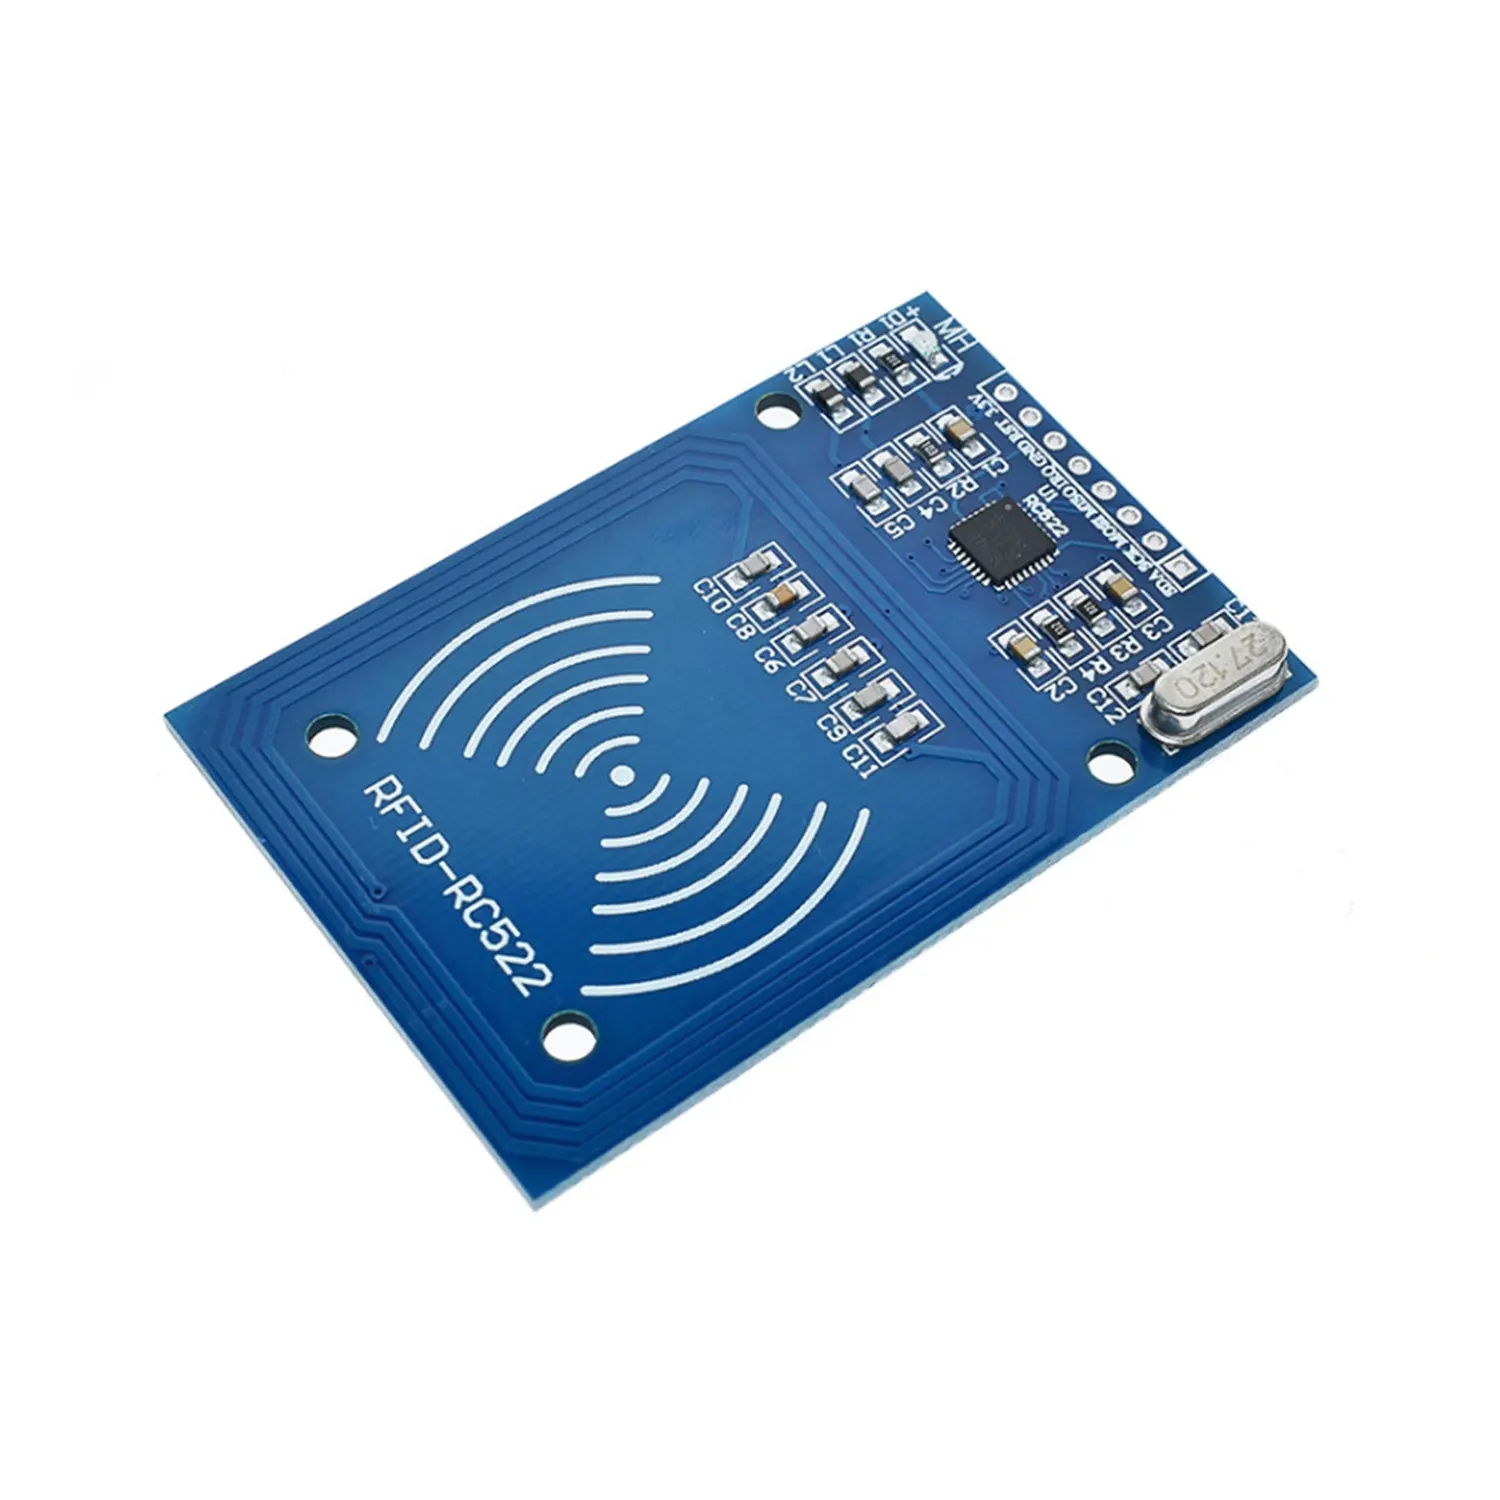 RUIST MFRC-522 RF IC 리더 카드 RFID-RC522 센서 판독 모듈 RC522 RFID 카드 리더 라이터 모듈